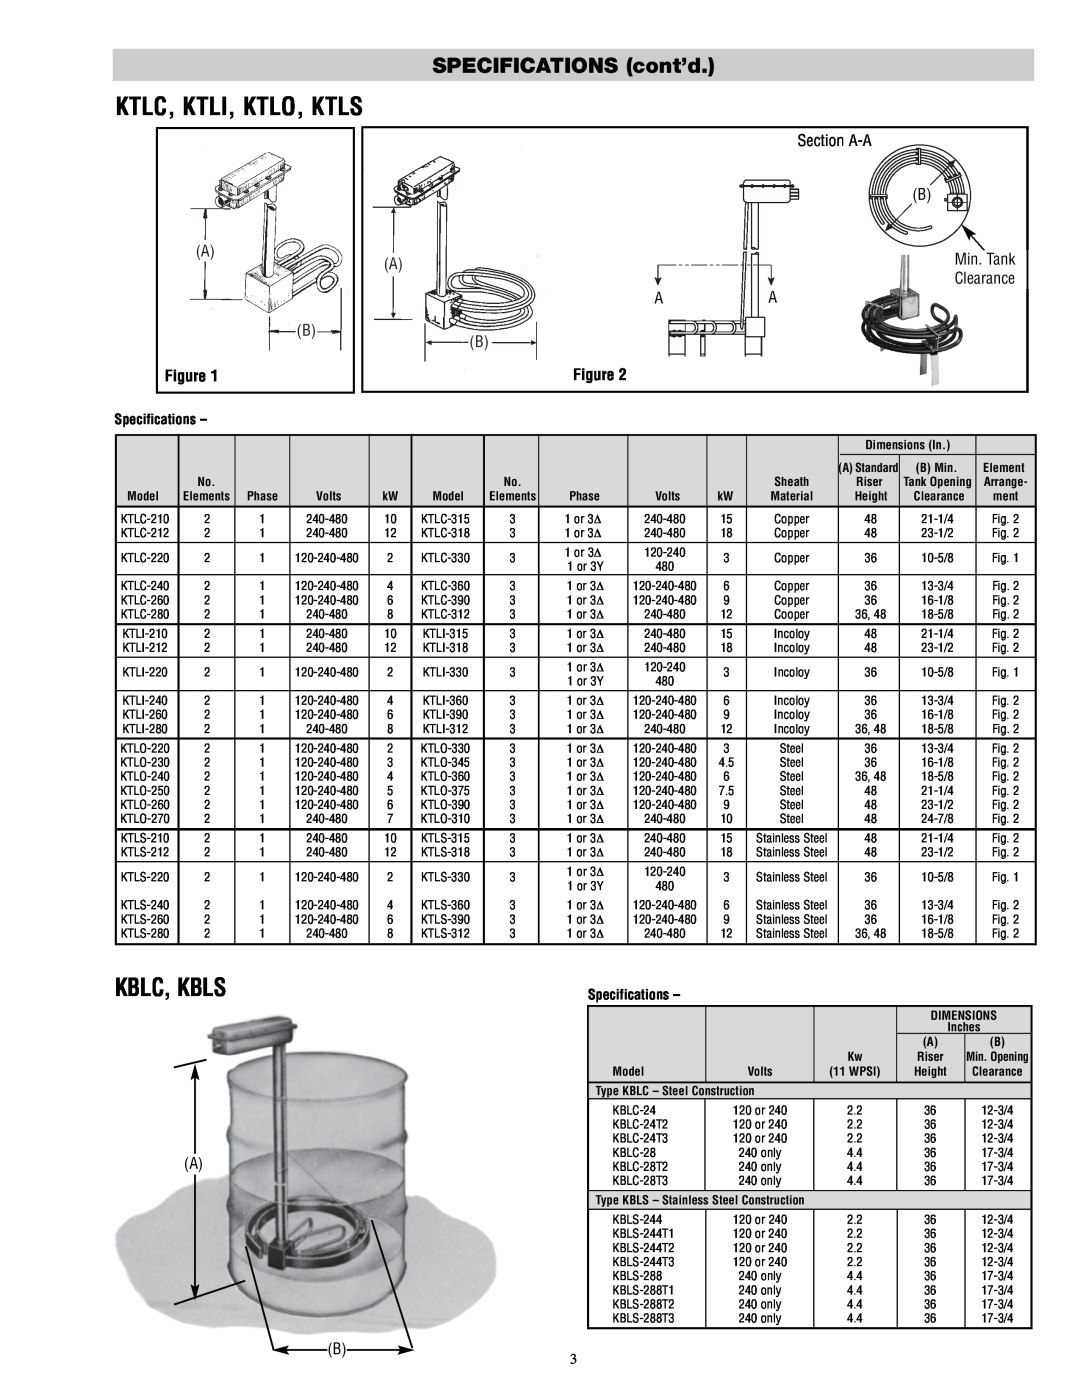 Chromalox PD411-10 installation instructions Ktlc, Ktli, Ktlo, Ktls, Kblc, Kbls, SPECIFICATIONS cont’d, Specifications 